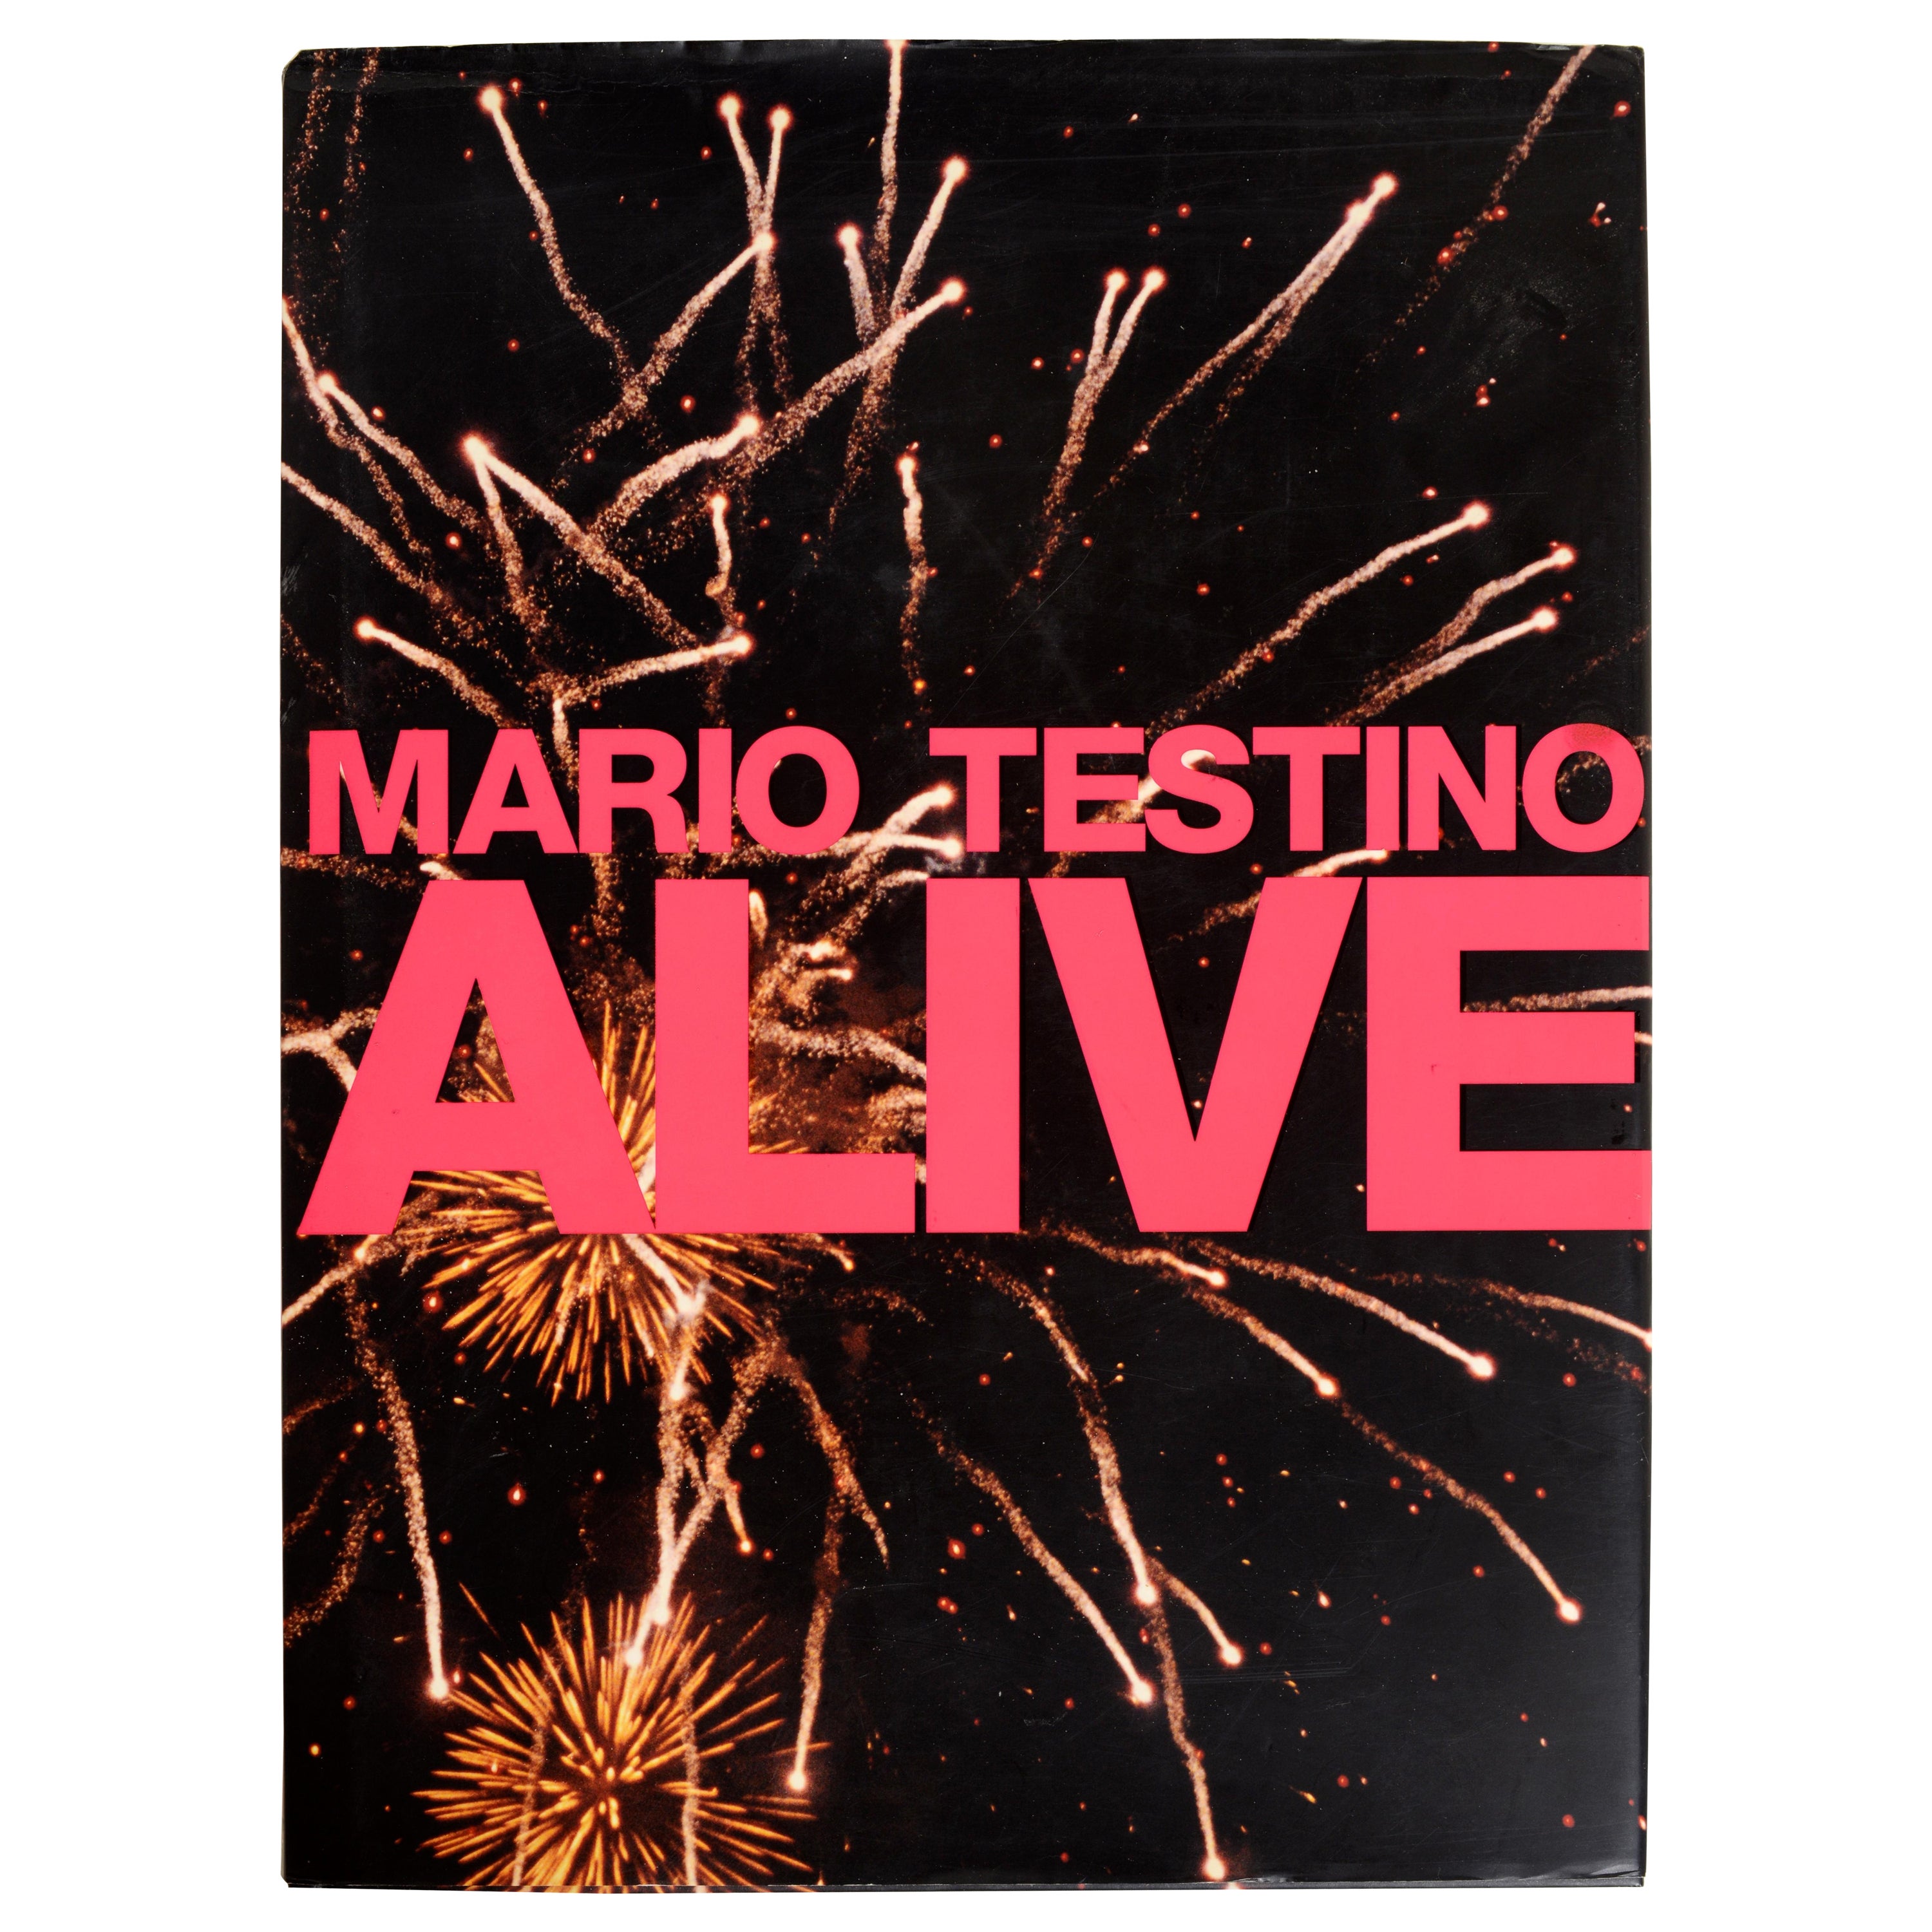 Mario Testino Alive-Einführung von Gwenth Paltrow, vom 1. Jh.